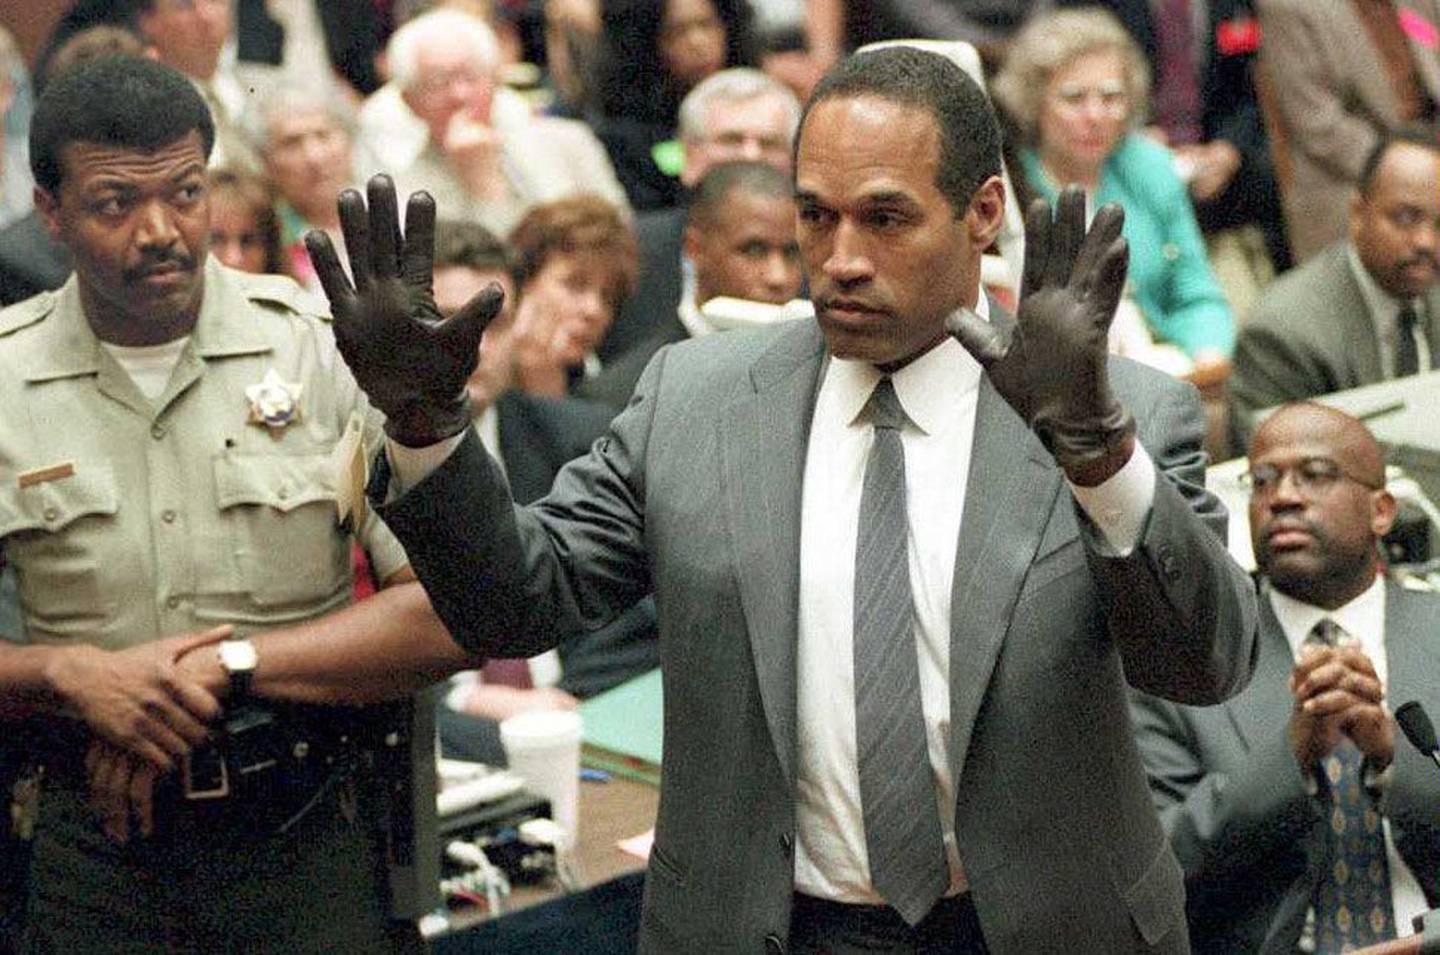 Simpson muestra al jurado un nuevo par de guantes extragrandes Aris, similares a los guantes encontrados en la escena del crimen de Bundy y Rockingham el 21 de junio de 1995, durante su juicio por doble asesinato en Los Ángeles, California.